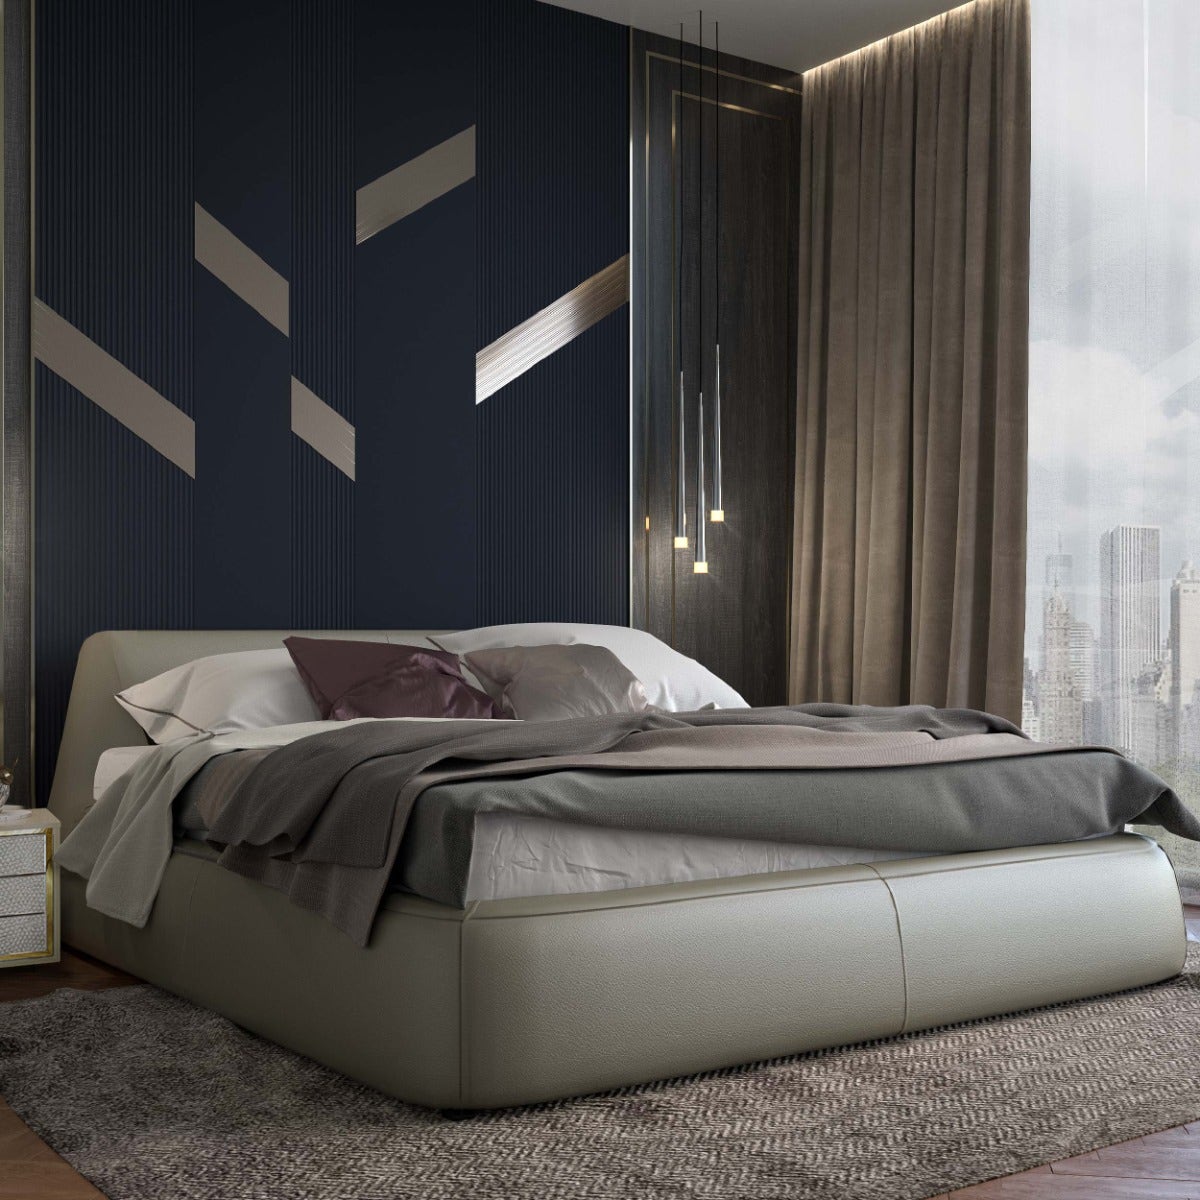 ชุดห้องนอน เตียงสั่งทำ รุ่น Melita-SB Design Square